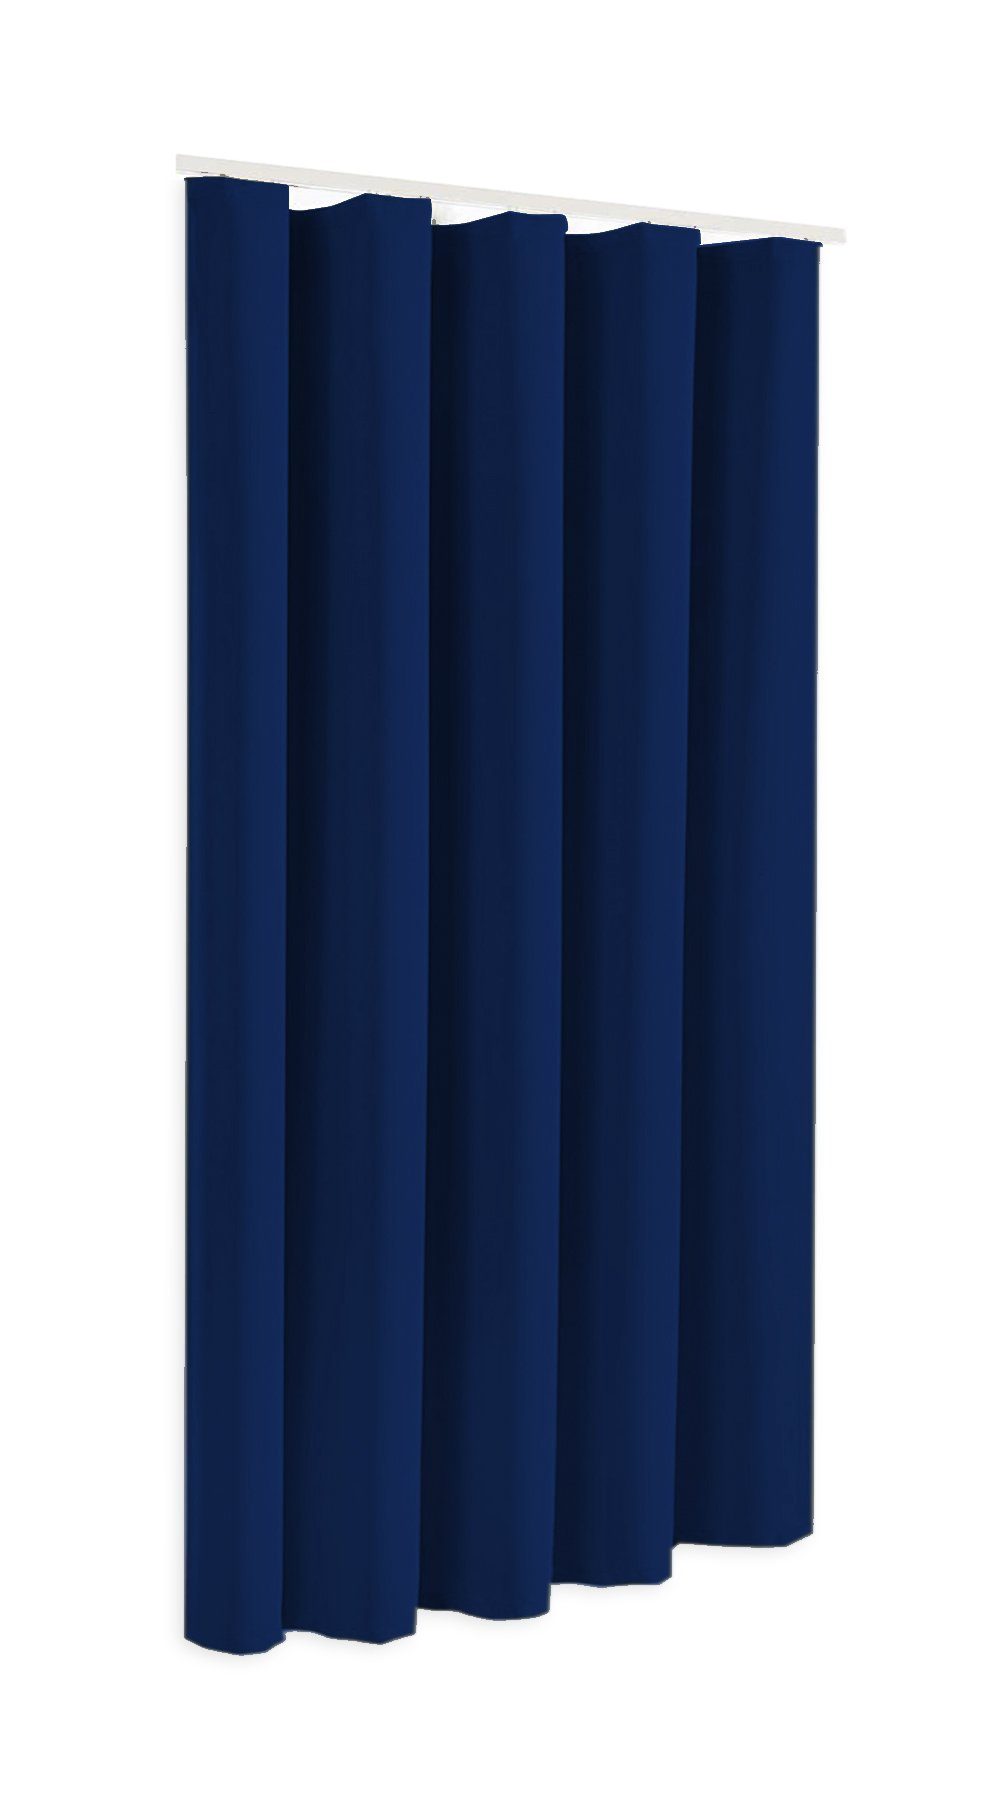 Verdunkelungsvorhang Blackout Verdunkelungsschal in Höhe 175cm oder 245cm, Modell Sopran, blickdicht, Thermovorhang, Clever-Kauf-24 blau